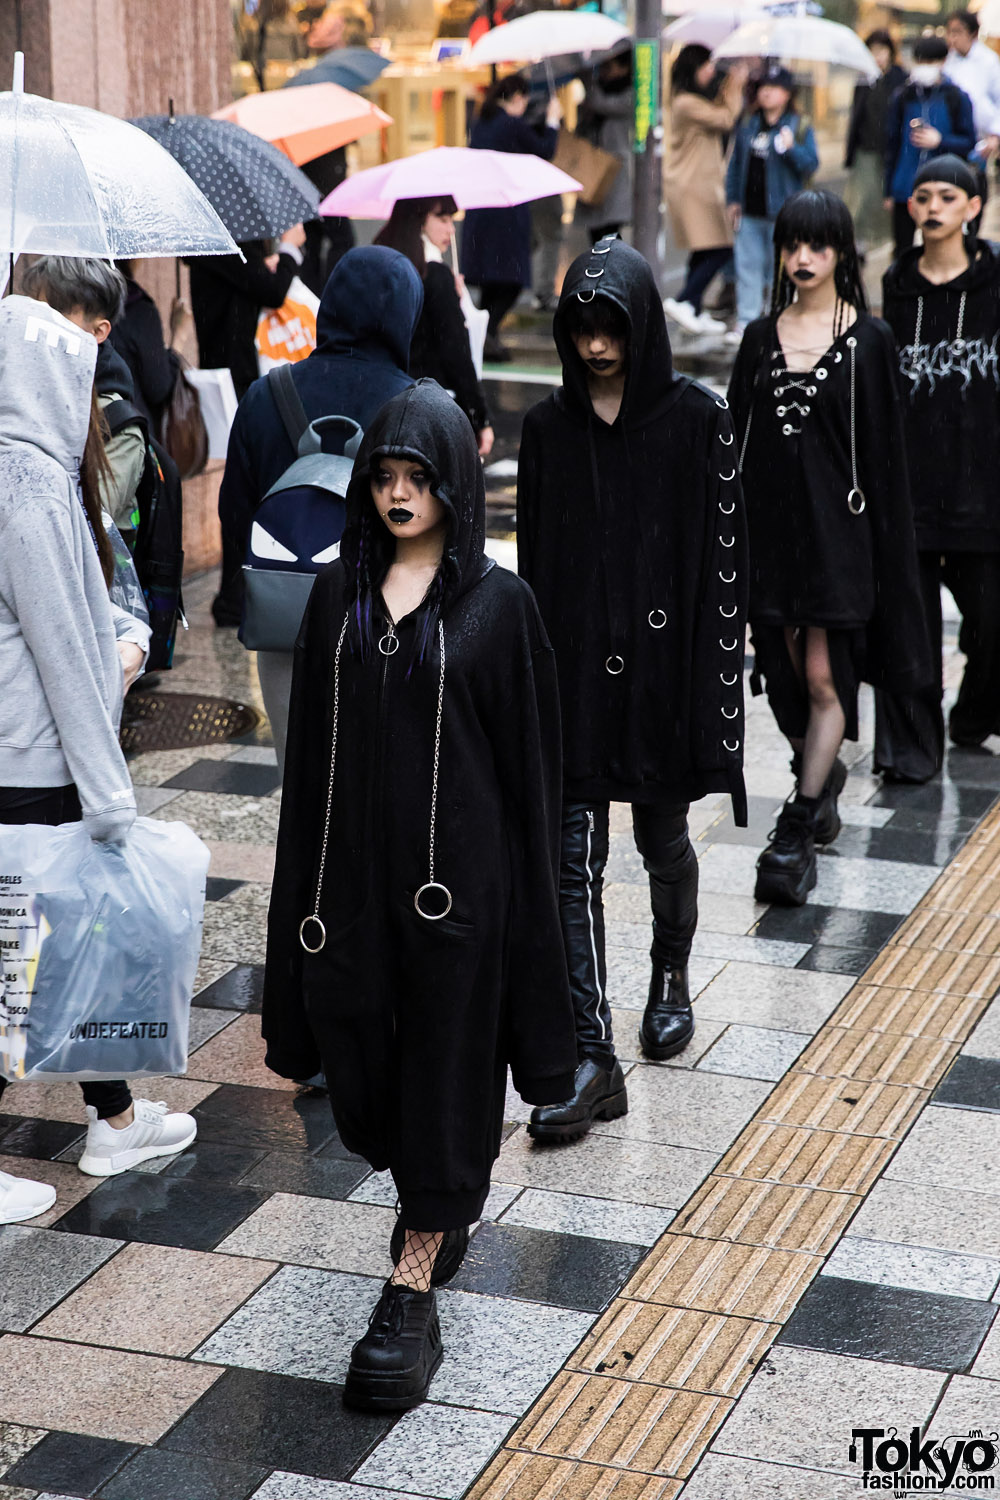 BERCERK “Dirty City” – Japanese Fashion Brand’s Dark Harajuku Street